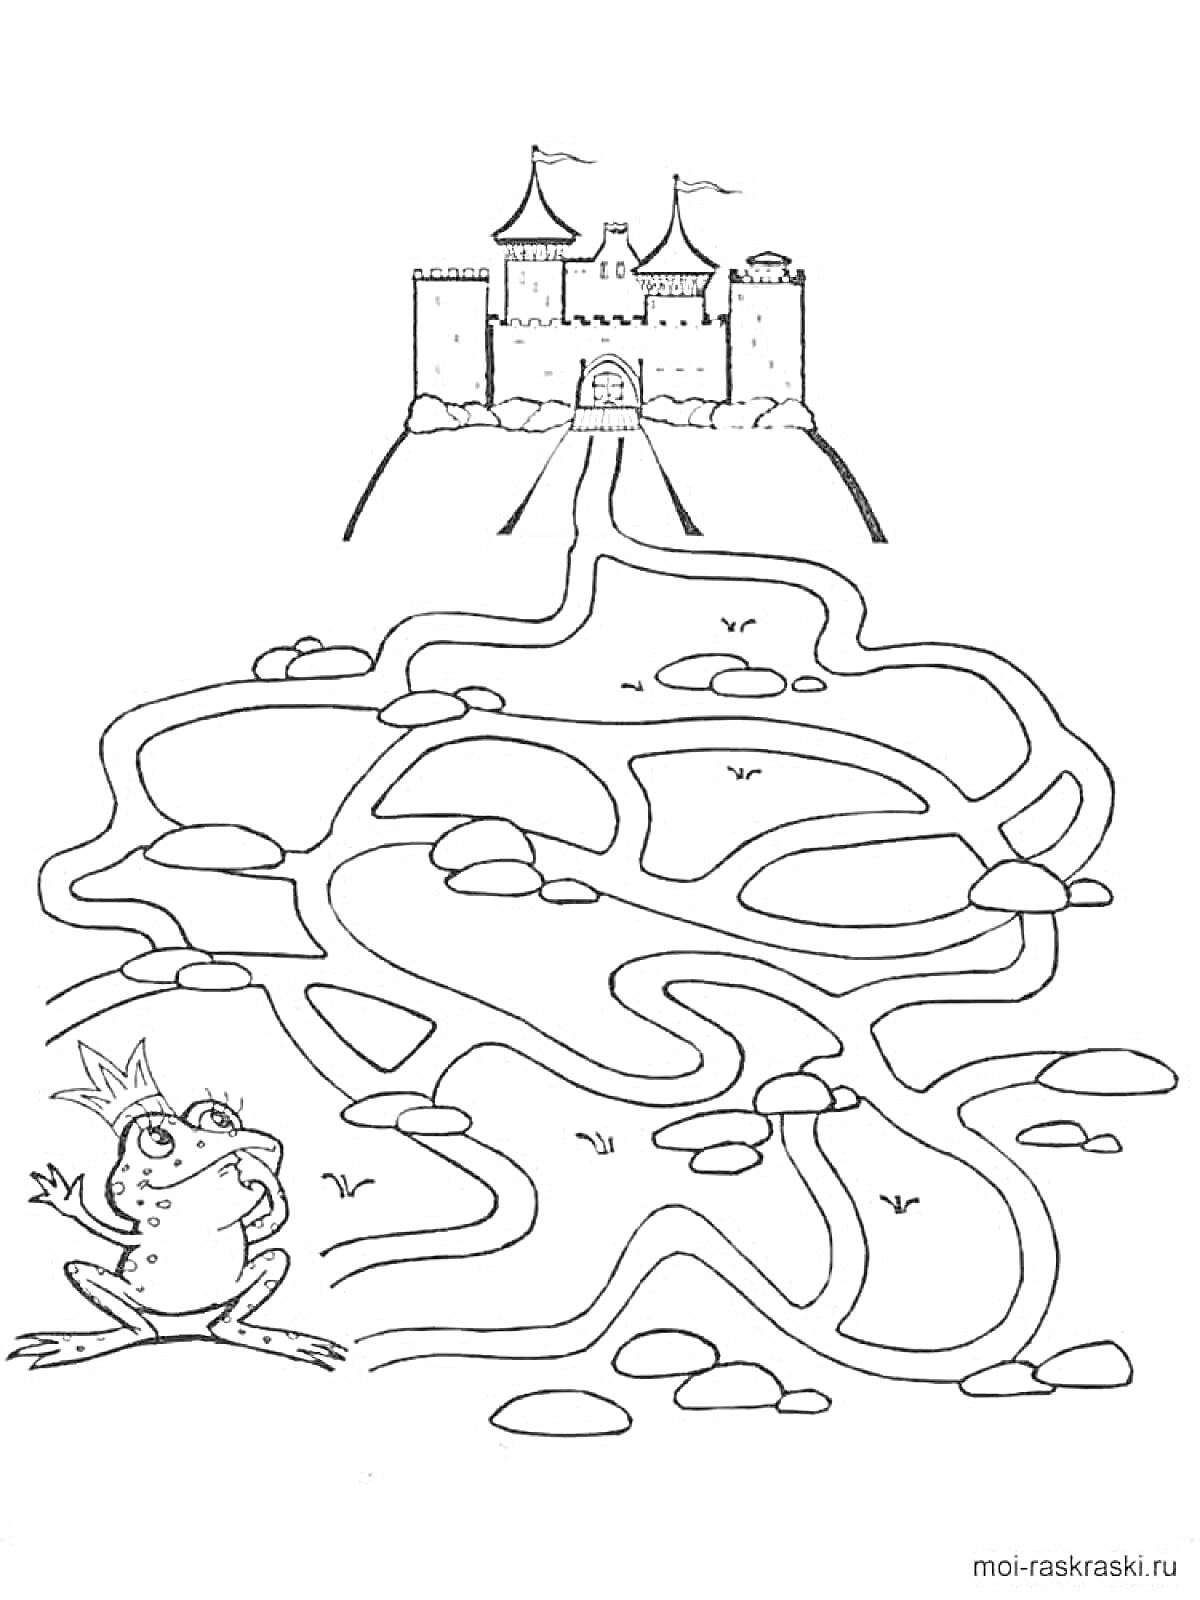 Лабиринт с лягушкой и замком